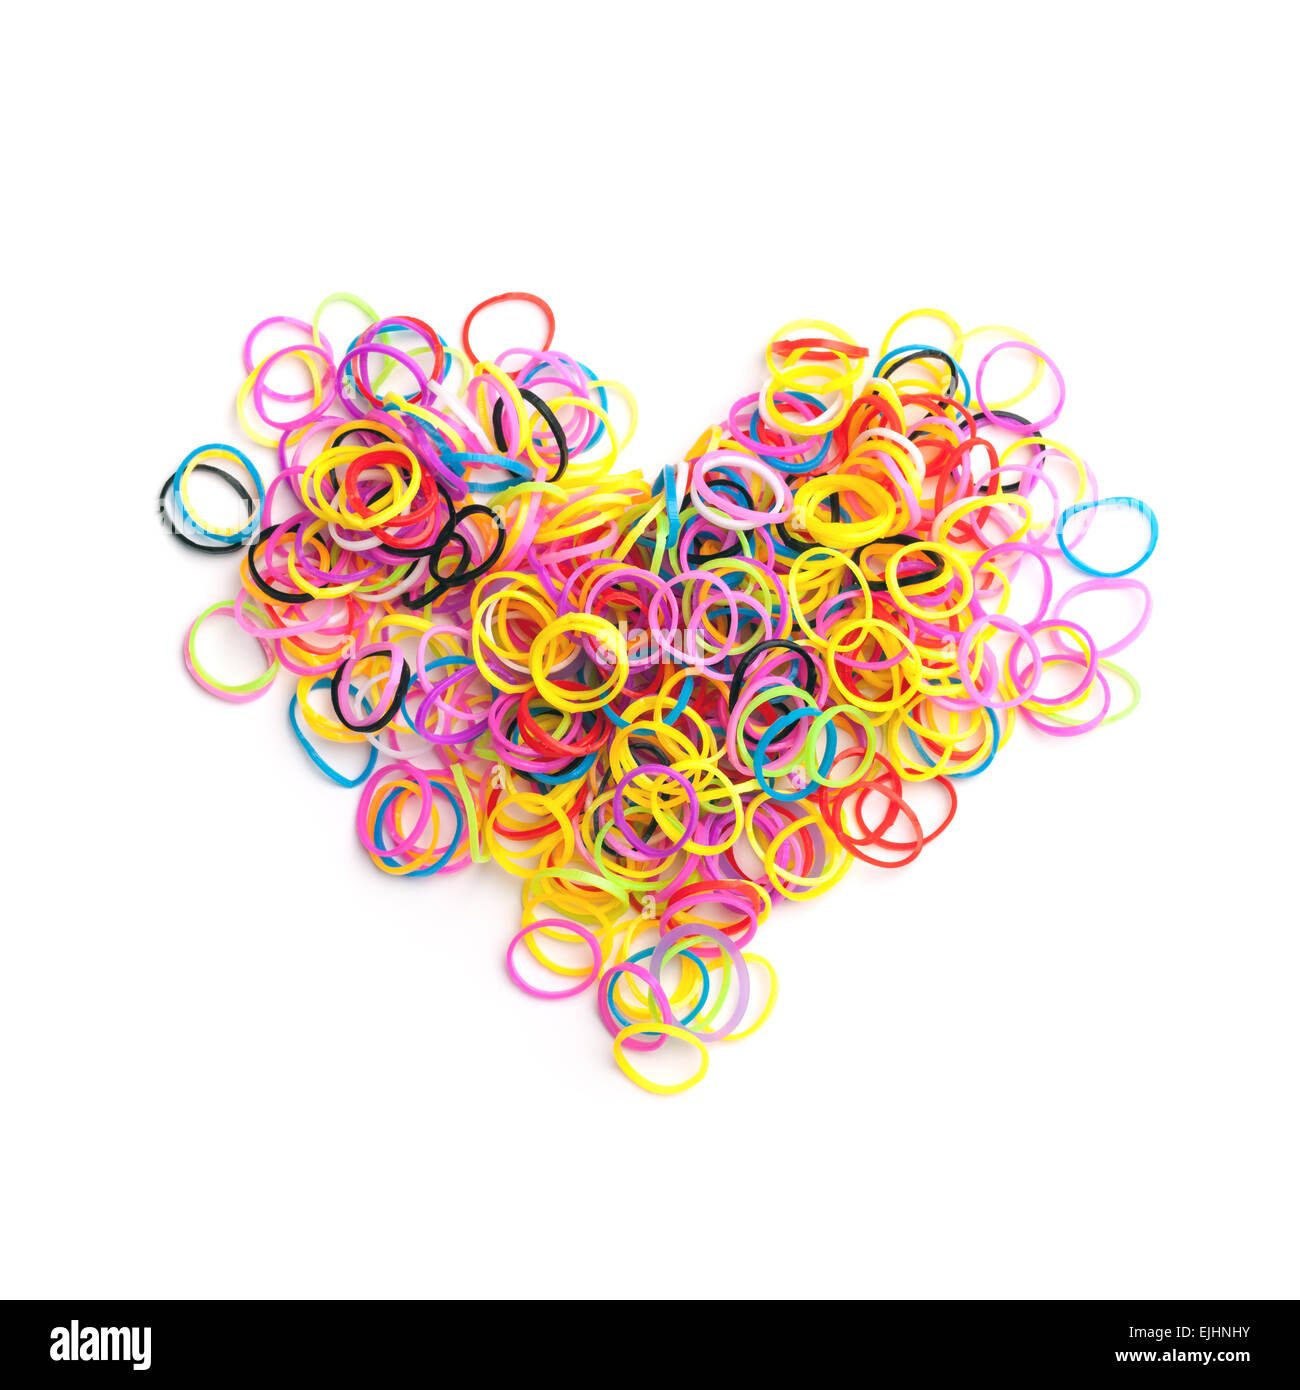 De petites bandes de caoutchouc coloré pour faire des bracelets rainbow loom en forme de coeur isolé sur fond blanc Banque D'Images